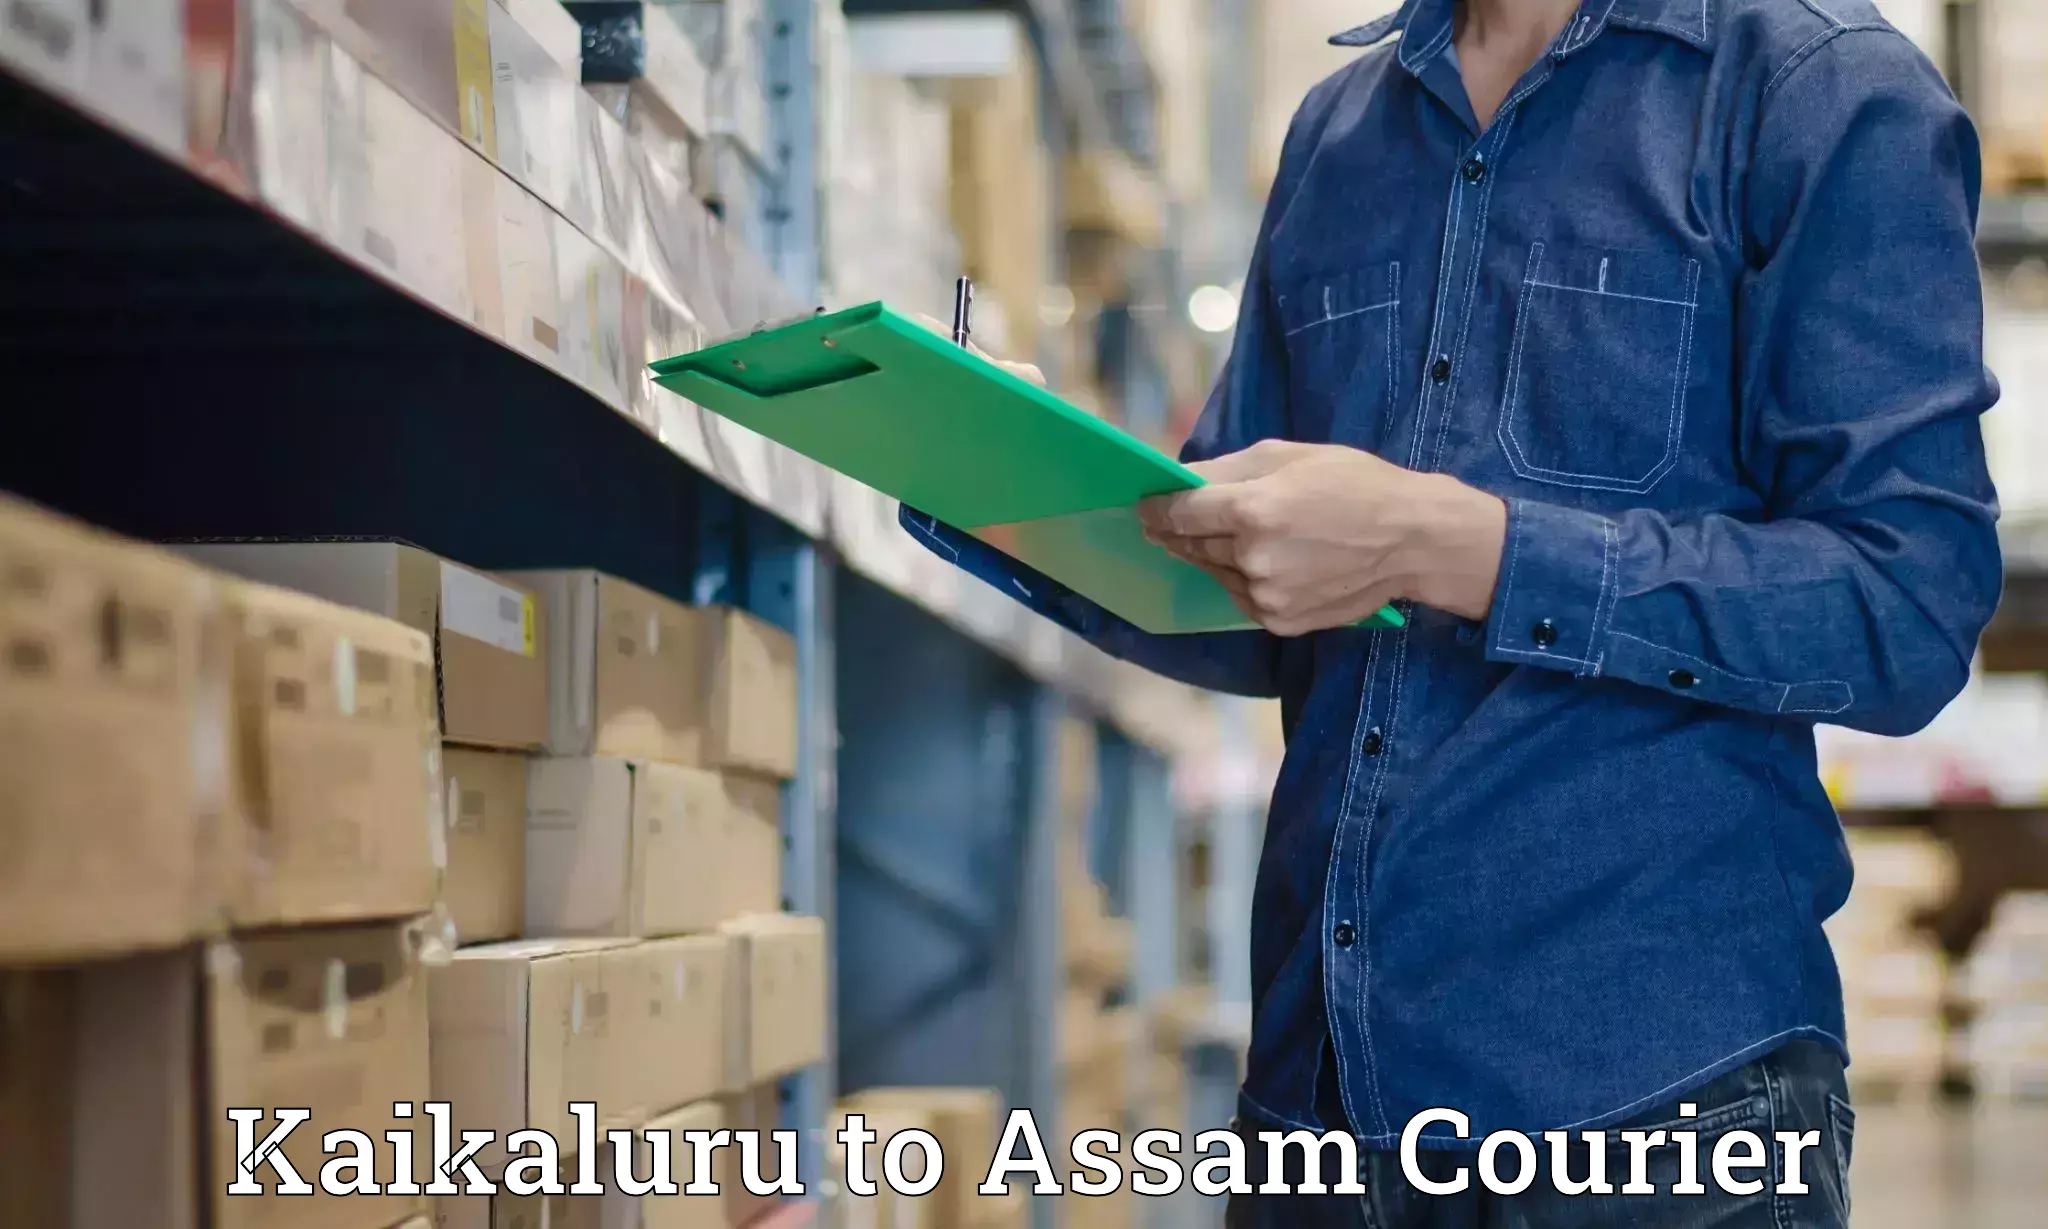 Postal and courier services Kaikaluru to Kalain